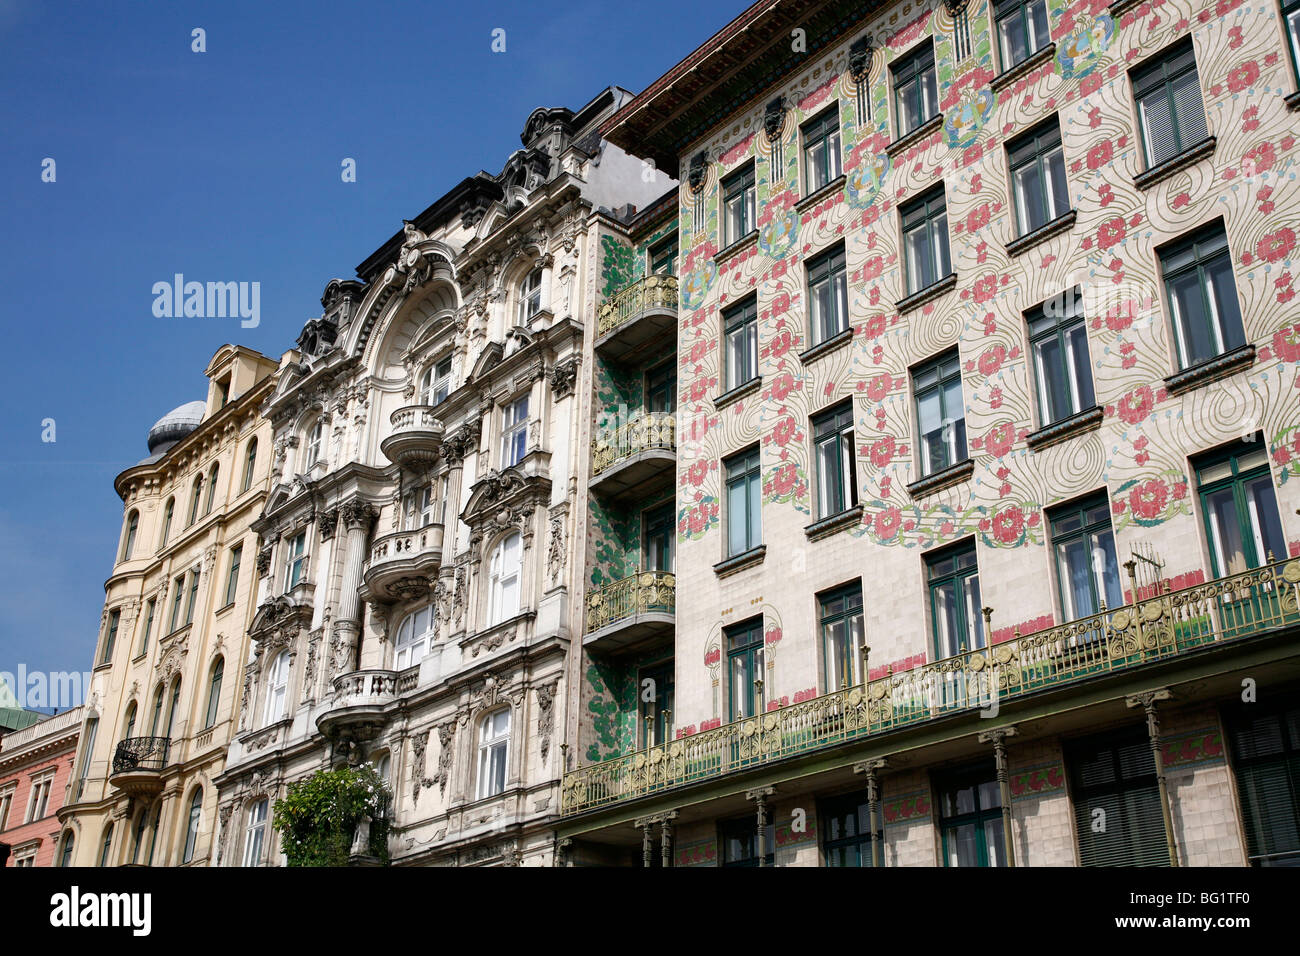 Majolikahaus von Otto Wagner, Wien, Österreich, Europa Stockfoto